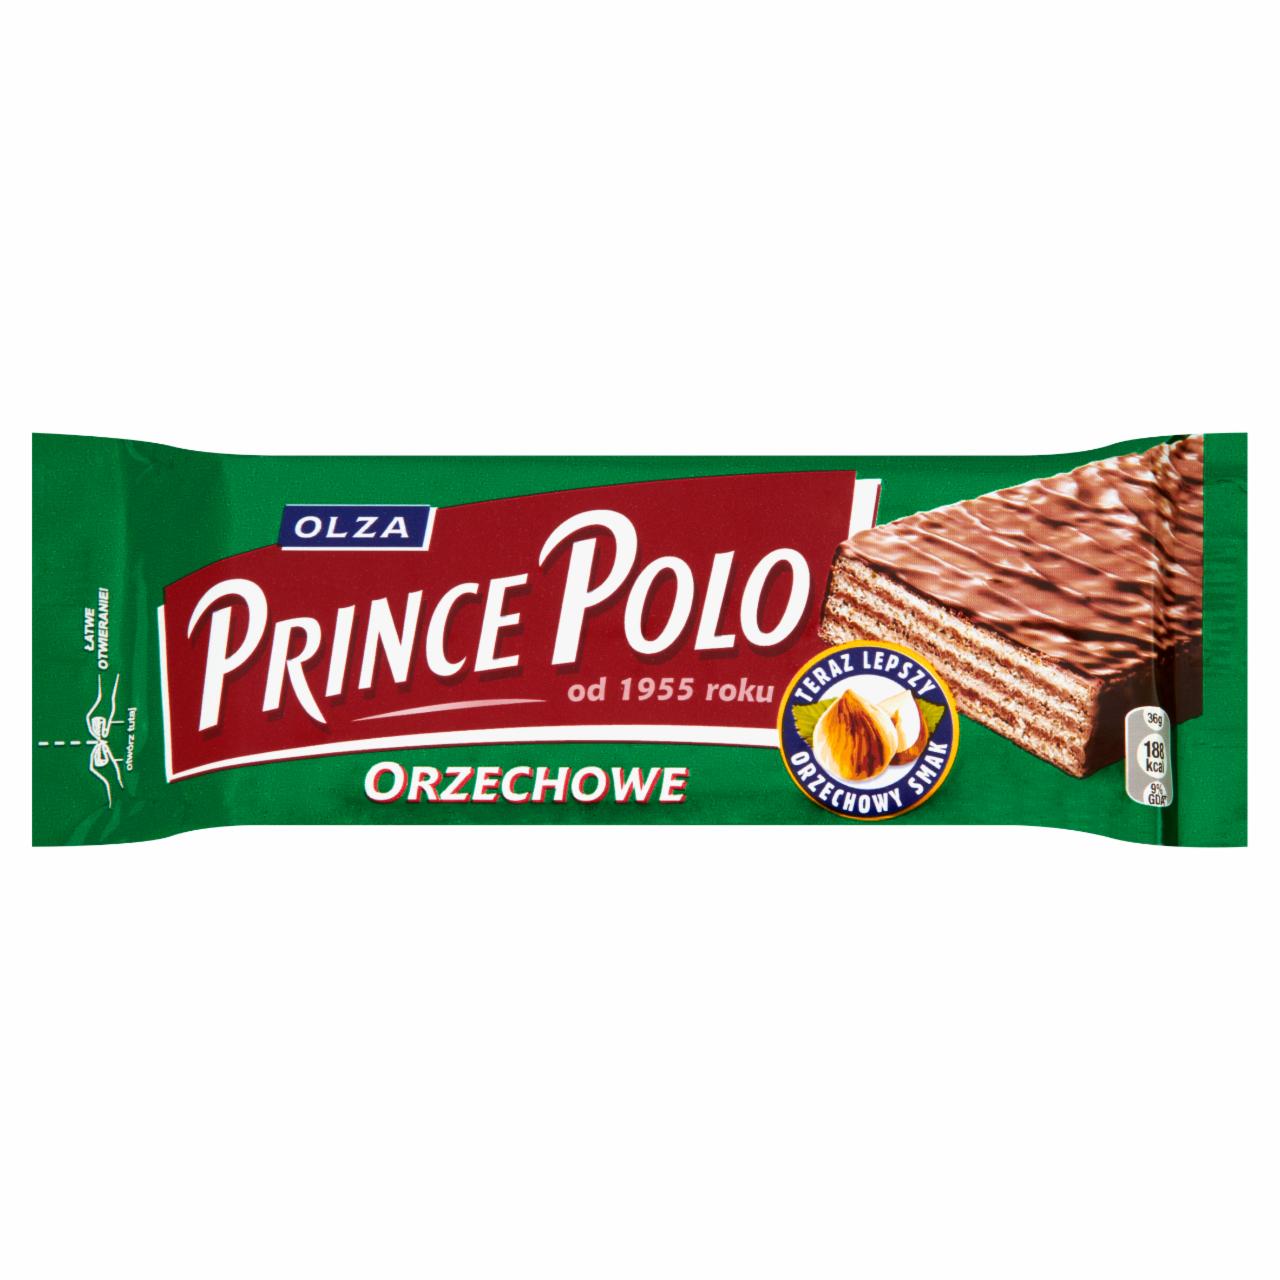 Zdjęcia - Prince Polo Orzechowe Kruchy wafelek z kremem orzechowym oblany czekoladą mleczną 36 g Olza